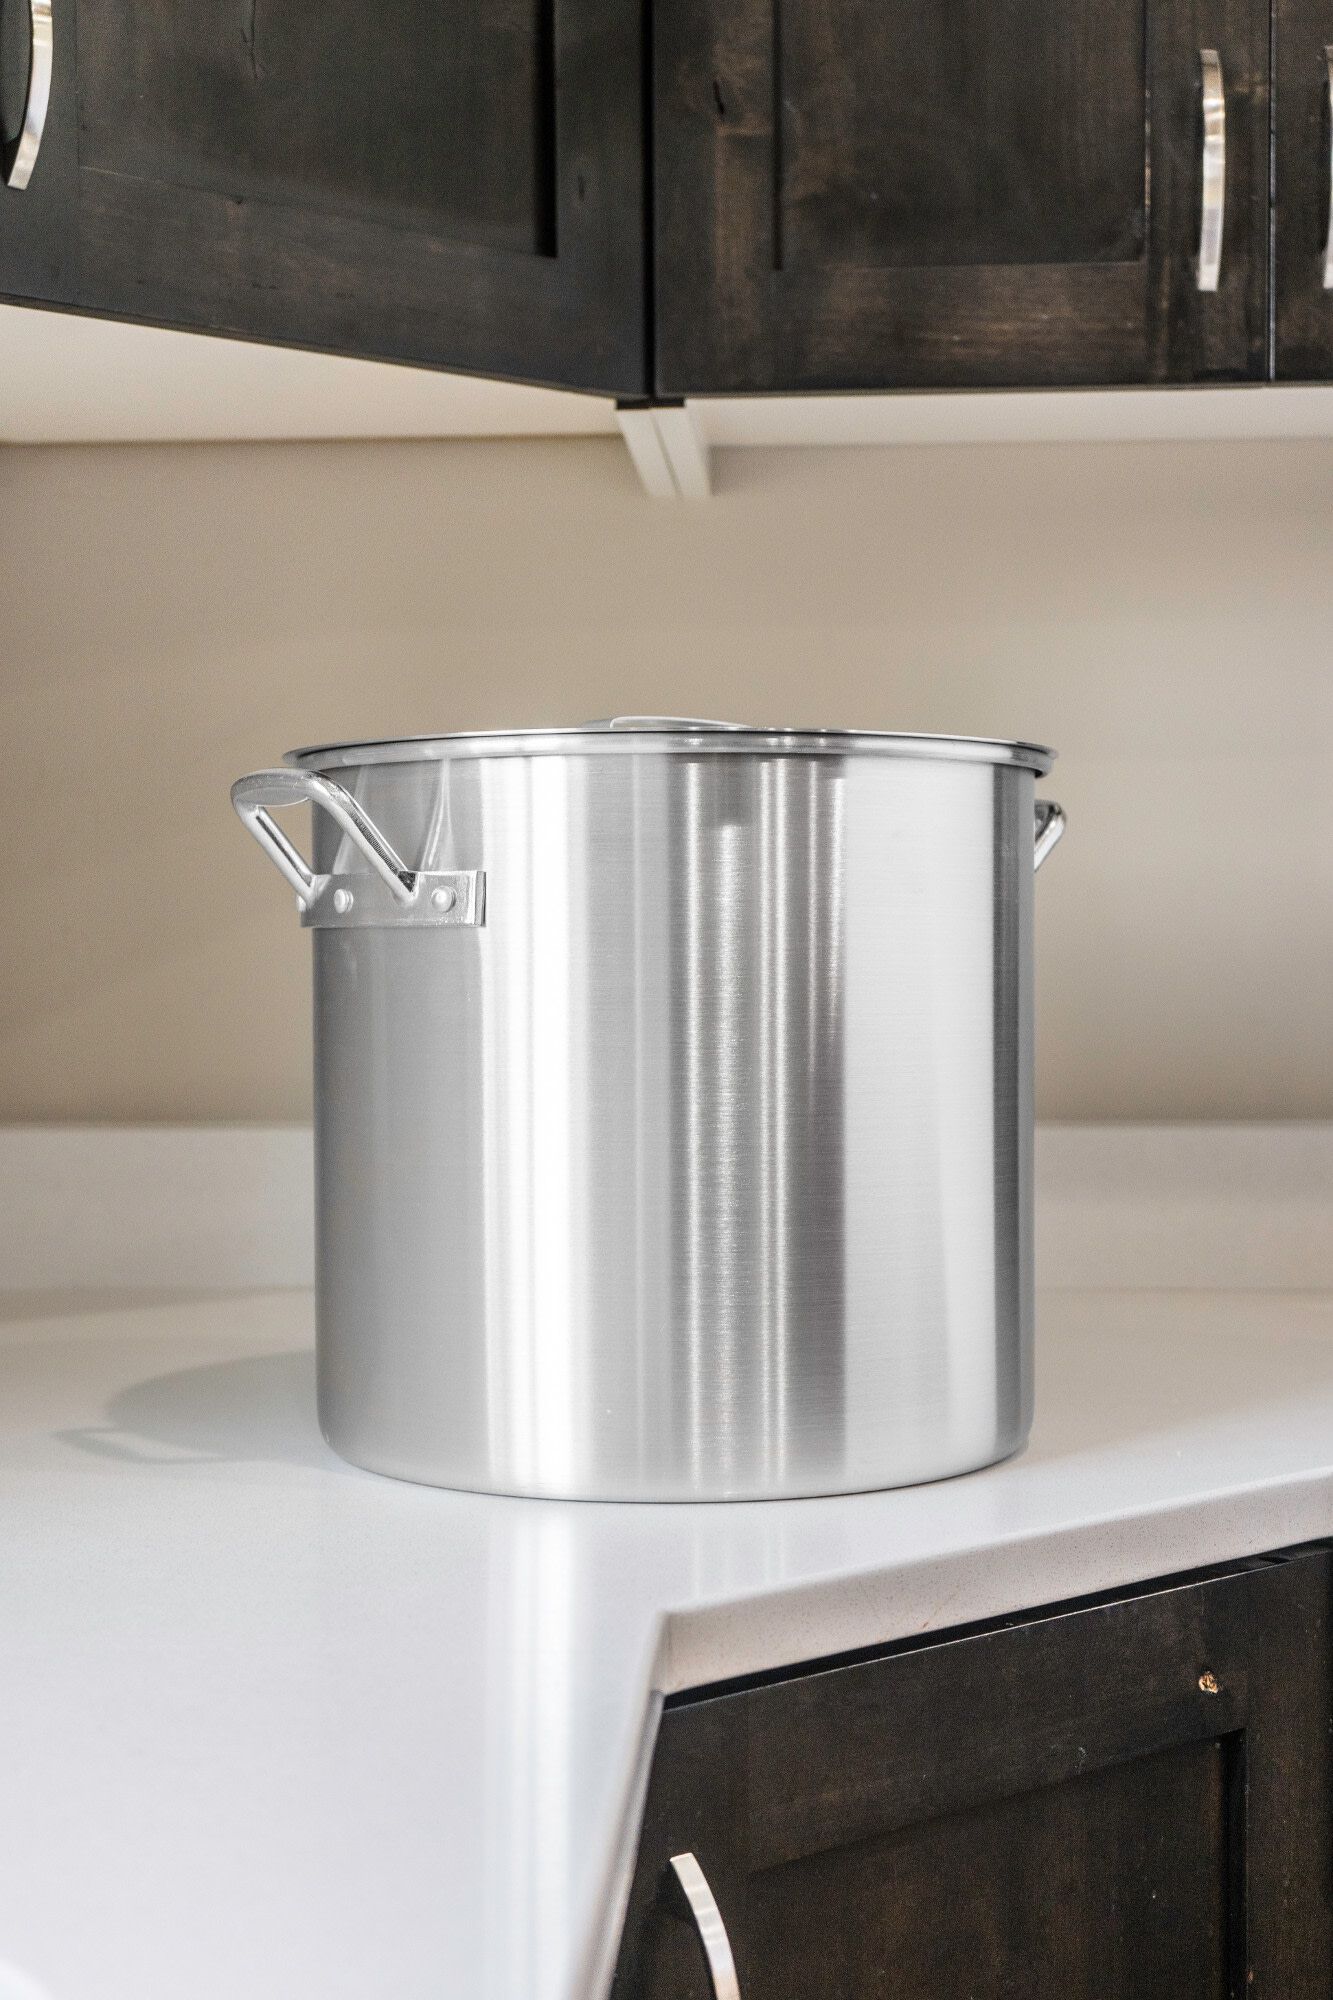 Aluminum Cooker Pot - 24 QT